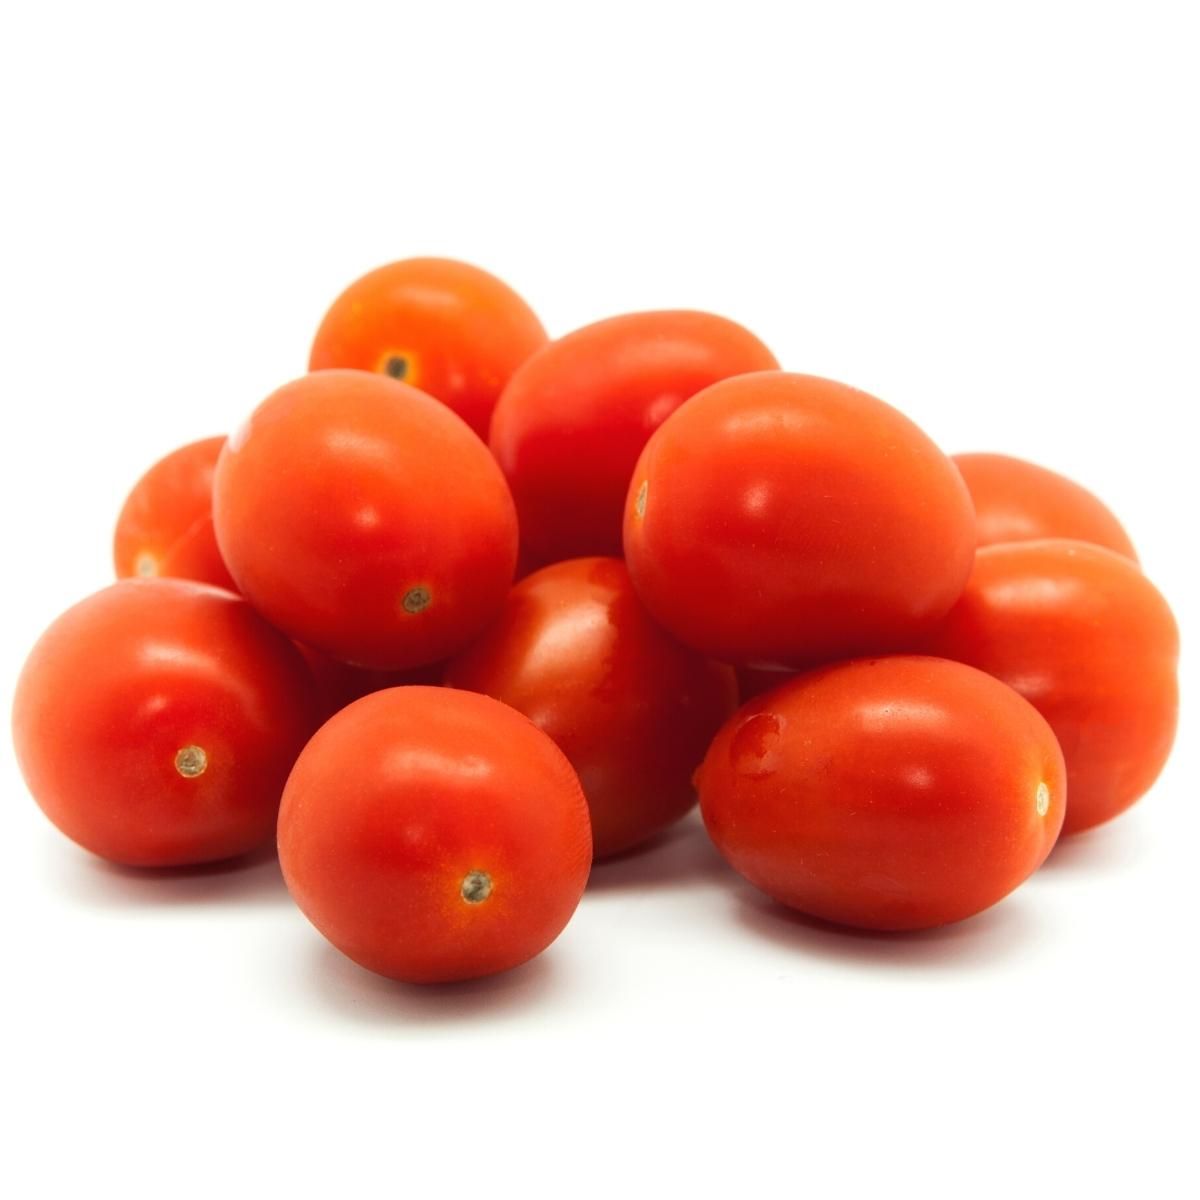 tomato_hybrid.jpg